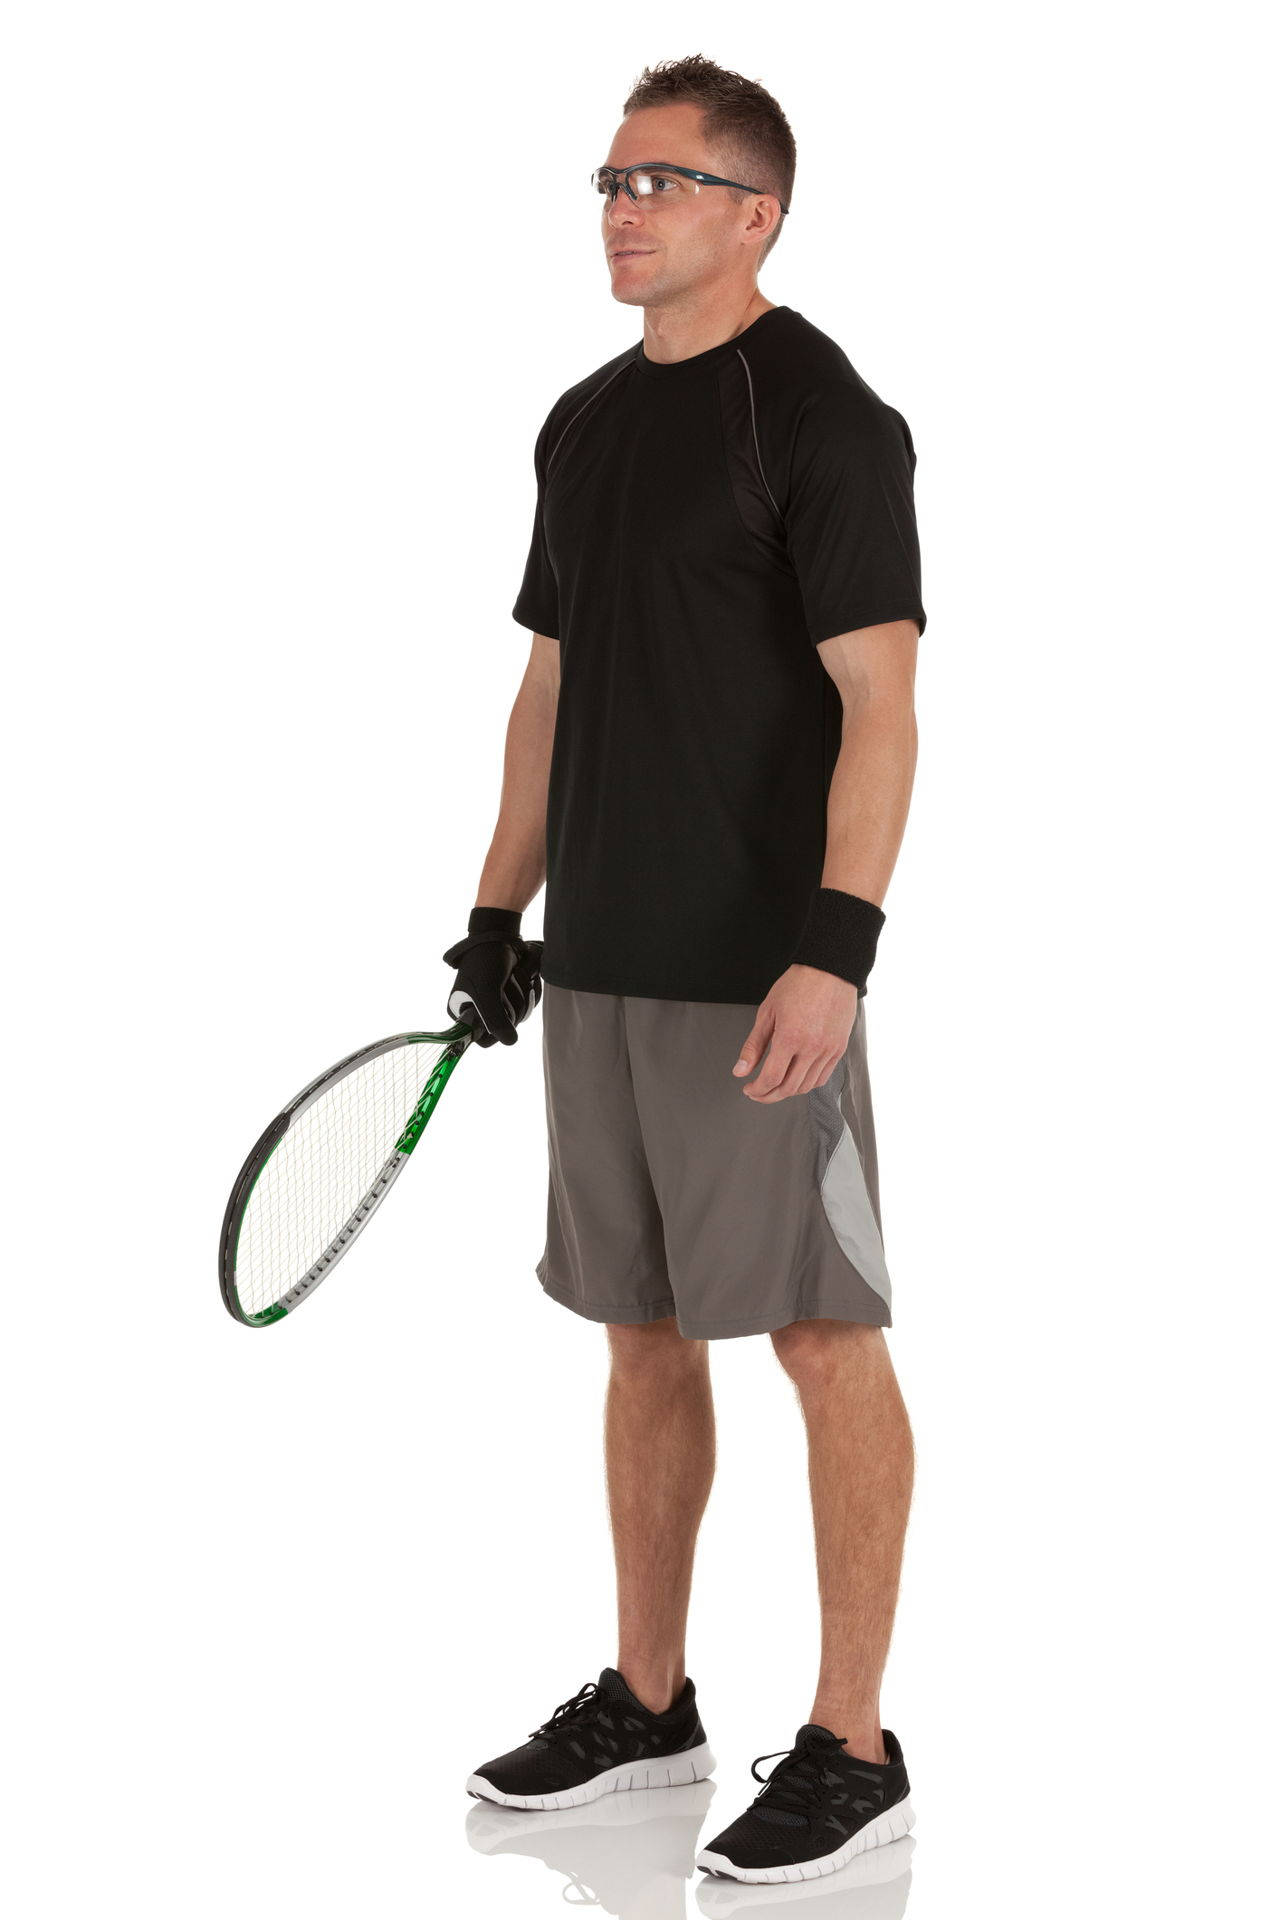 Appassionatogiocatore Di Racquetball Pronto Per L'azione Sfondo